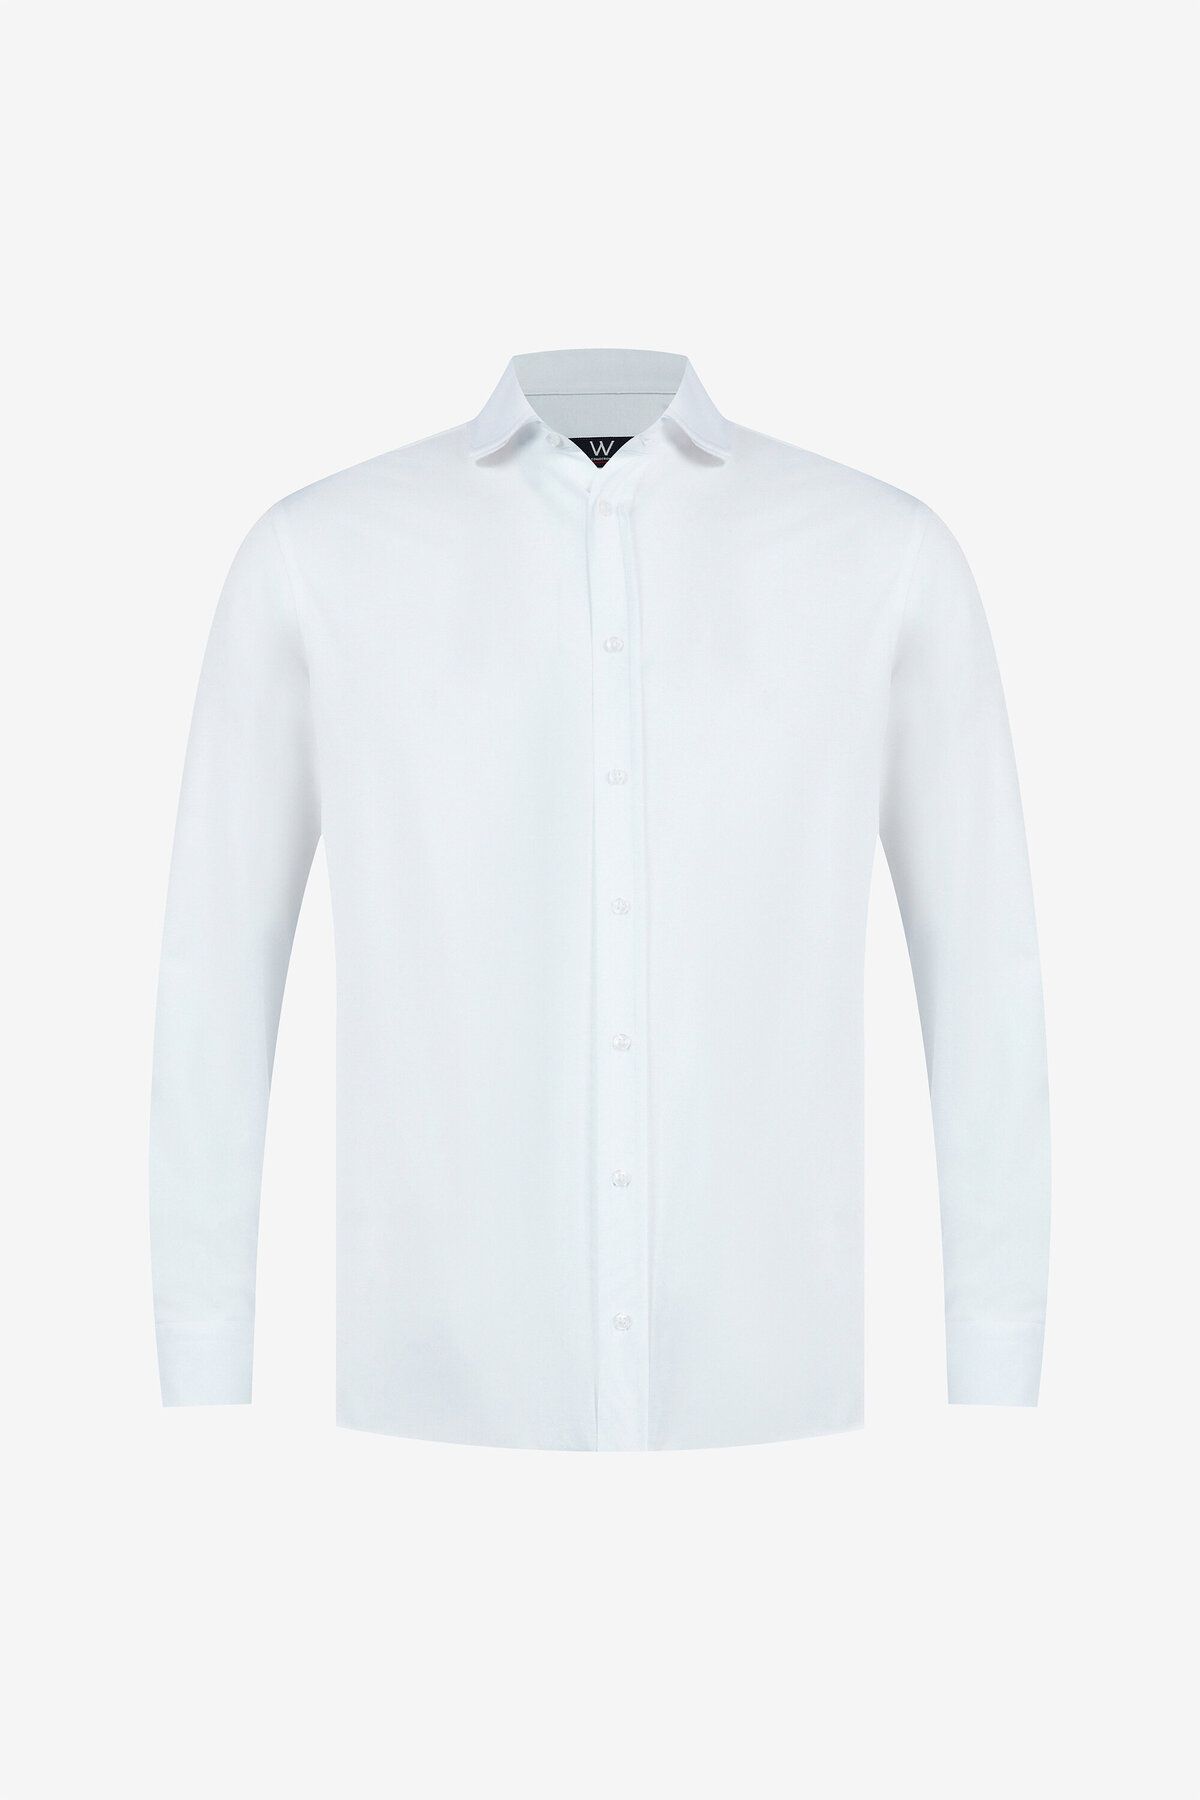 W Collection Beyaz Örme Gömlek